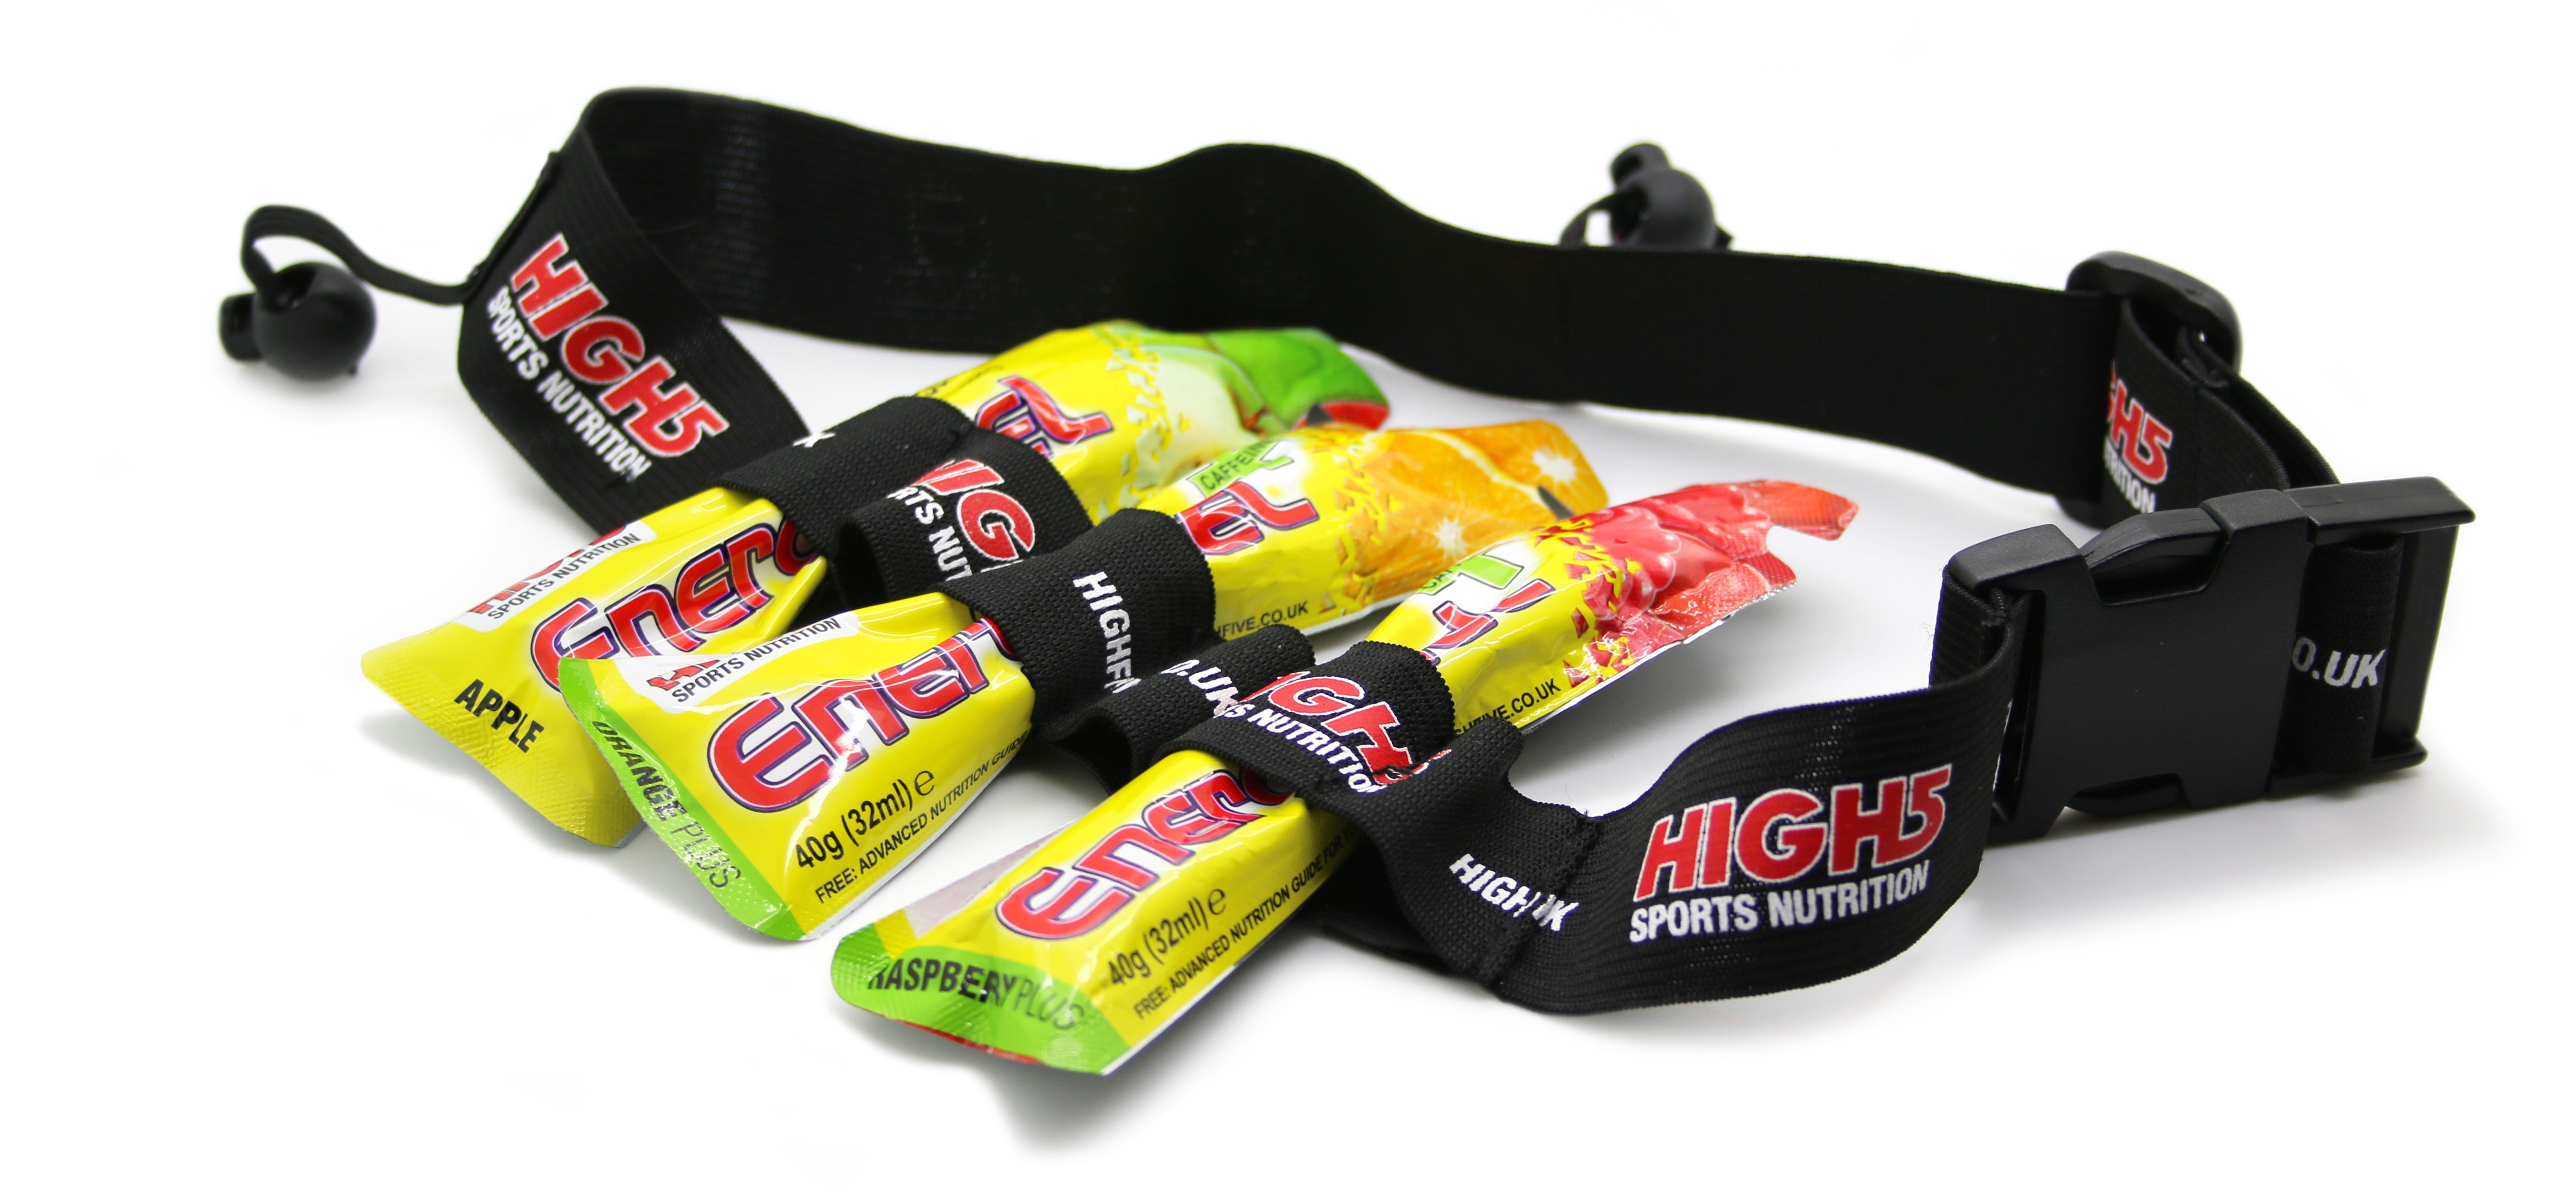 Sports gel. Спортивные гели для бегунов. Пояс для спортивного геля. Спортивное питание гели. Пояс для гелей для бегунов.